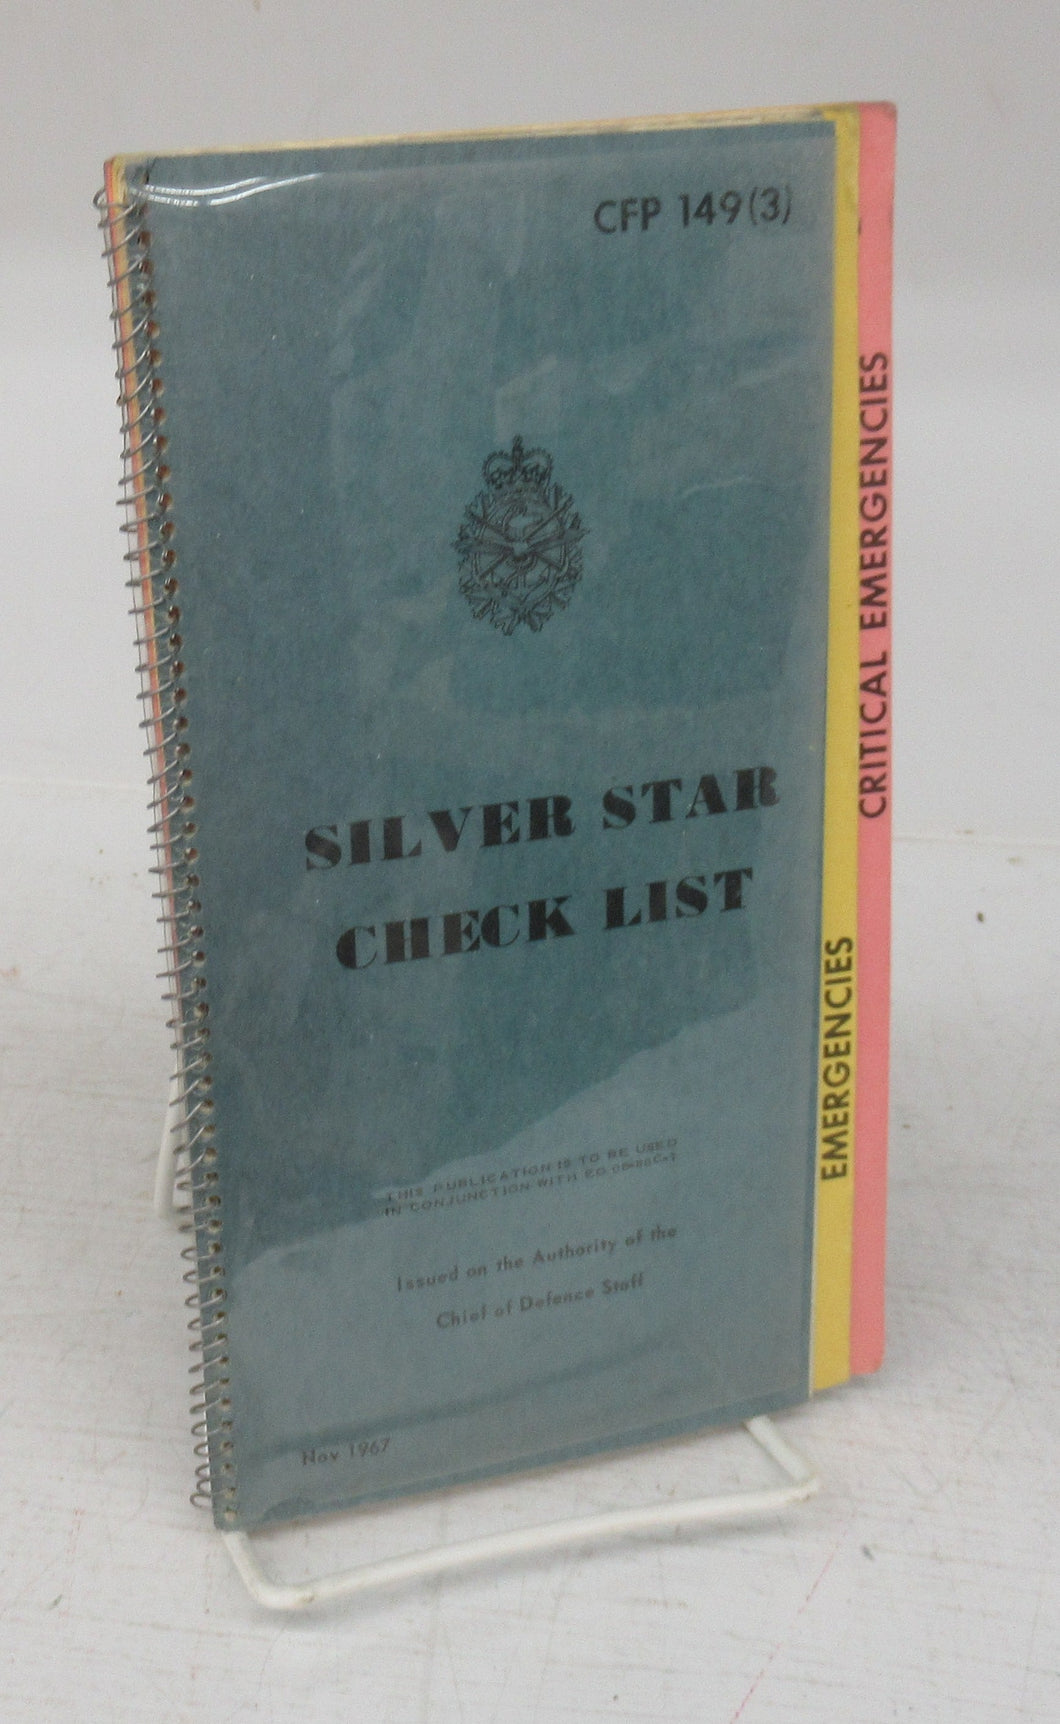 Silver Star Check List, Nov. 1967